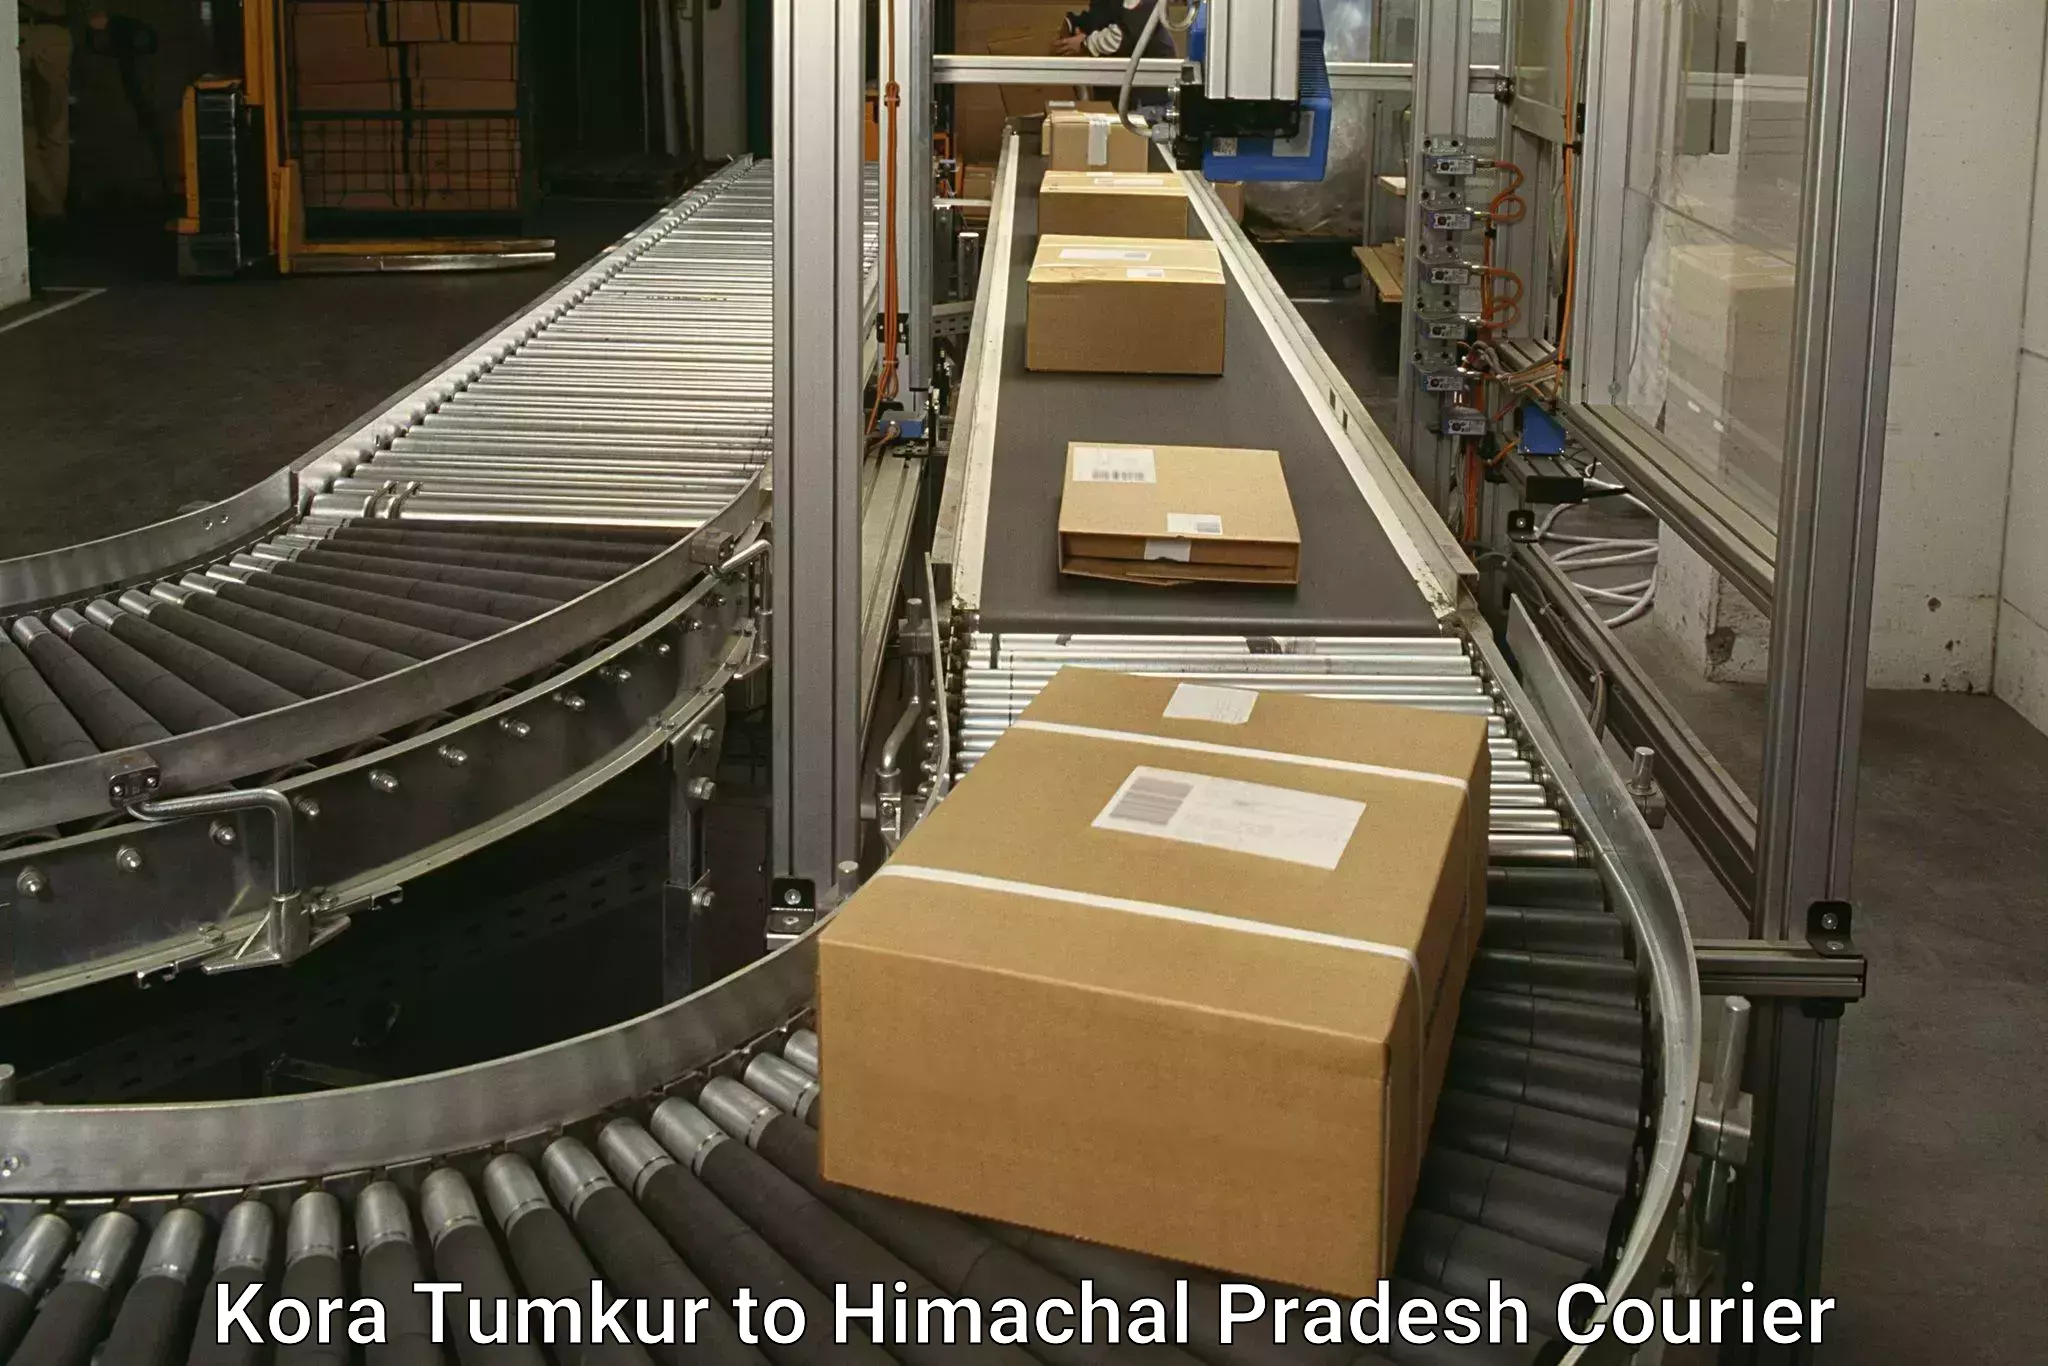 Large package courier Kora Tumkur to Sirmaur